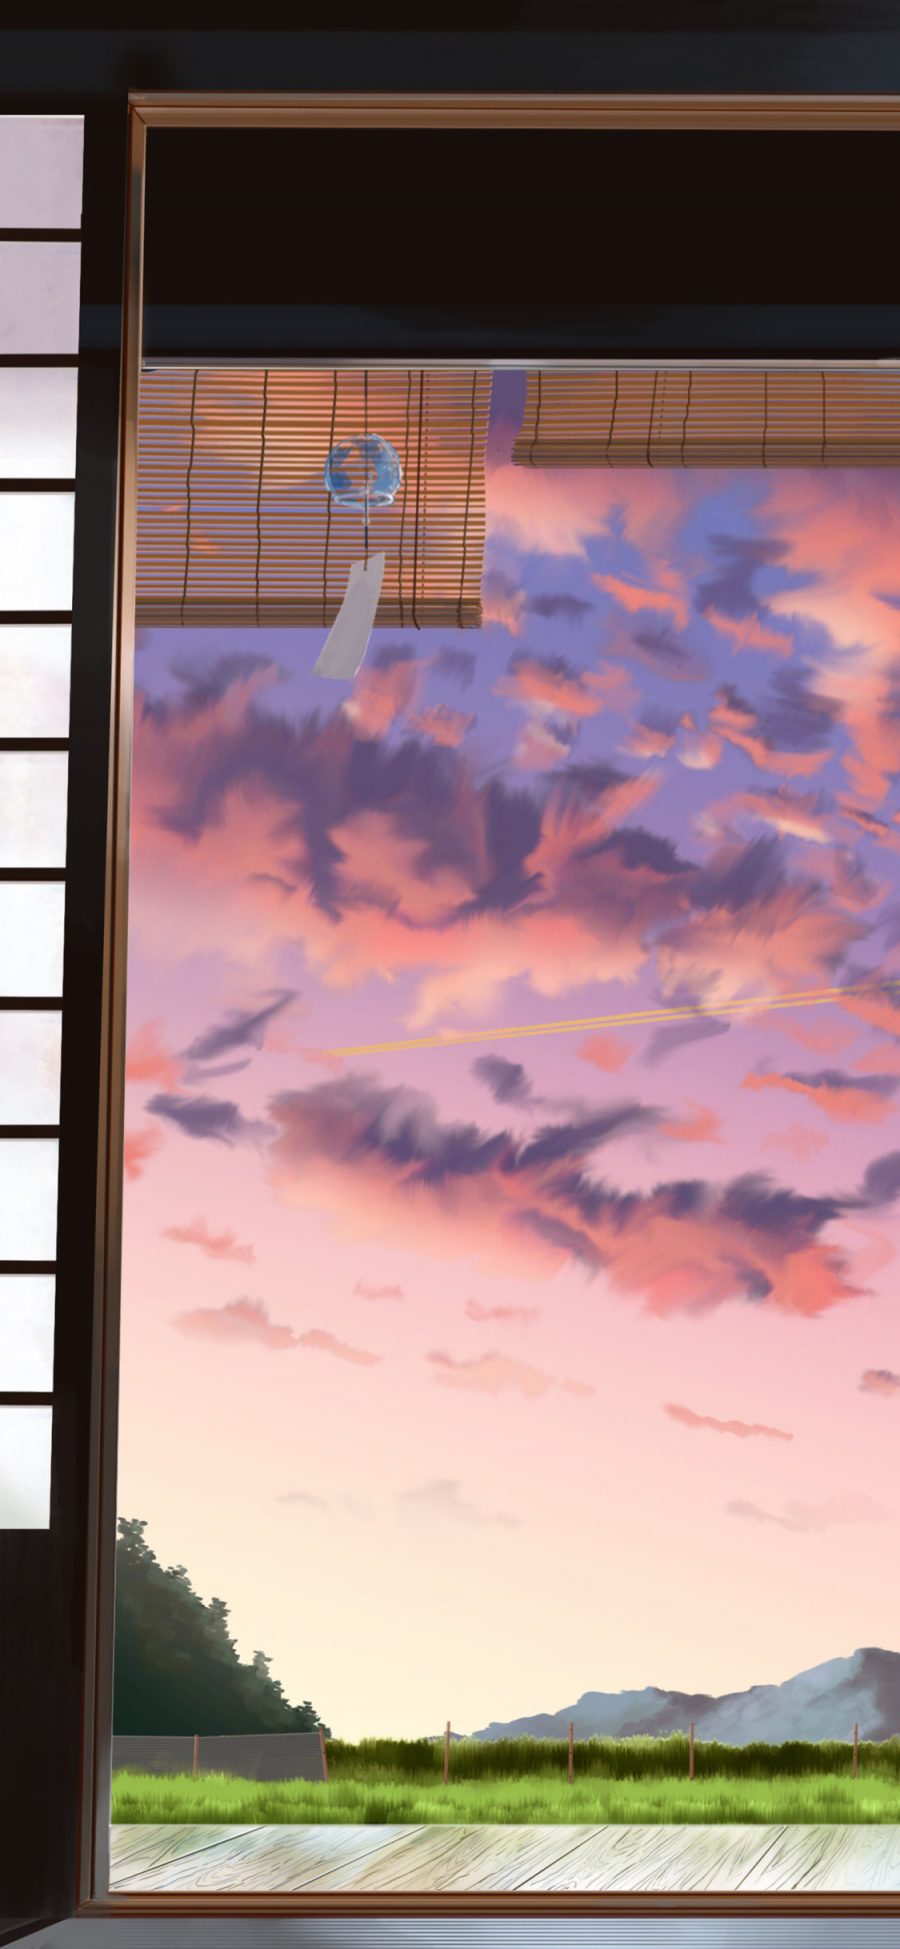 [2436×1125]漫画场景 房屋 屋内 日本 天空 苹果手机动漫壁纸图片